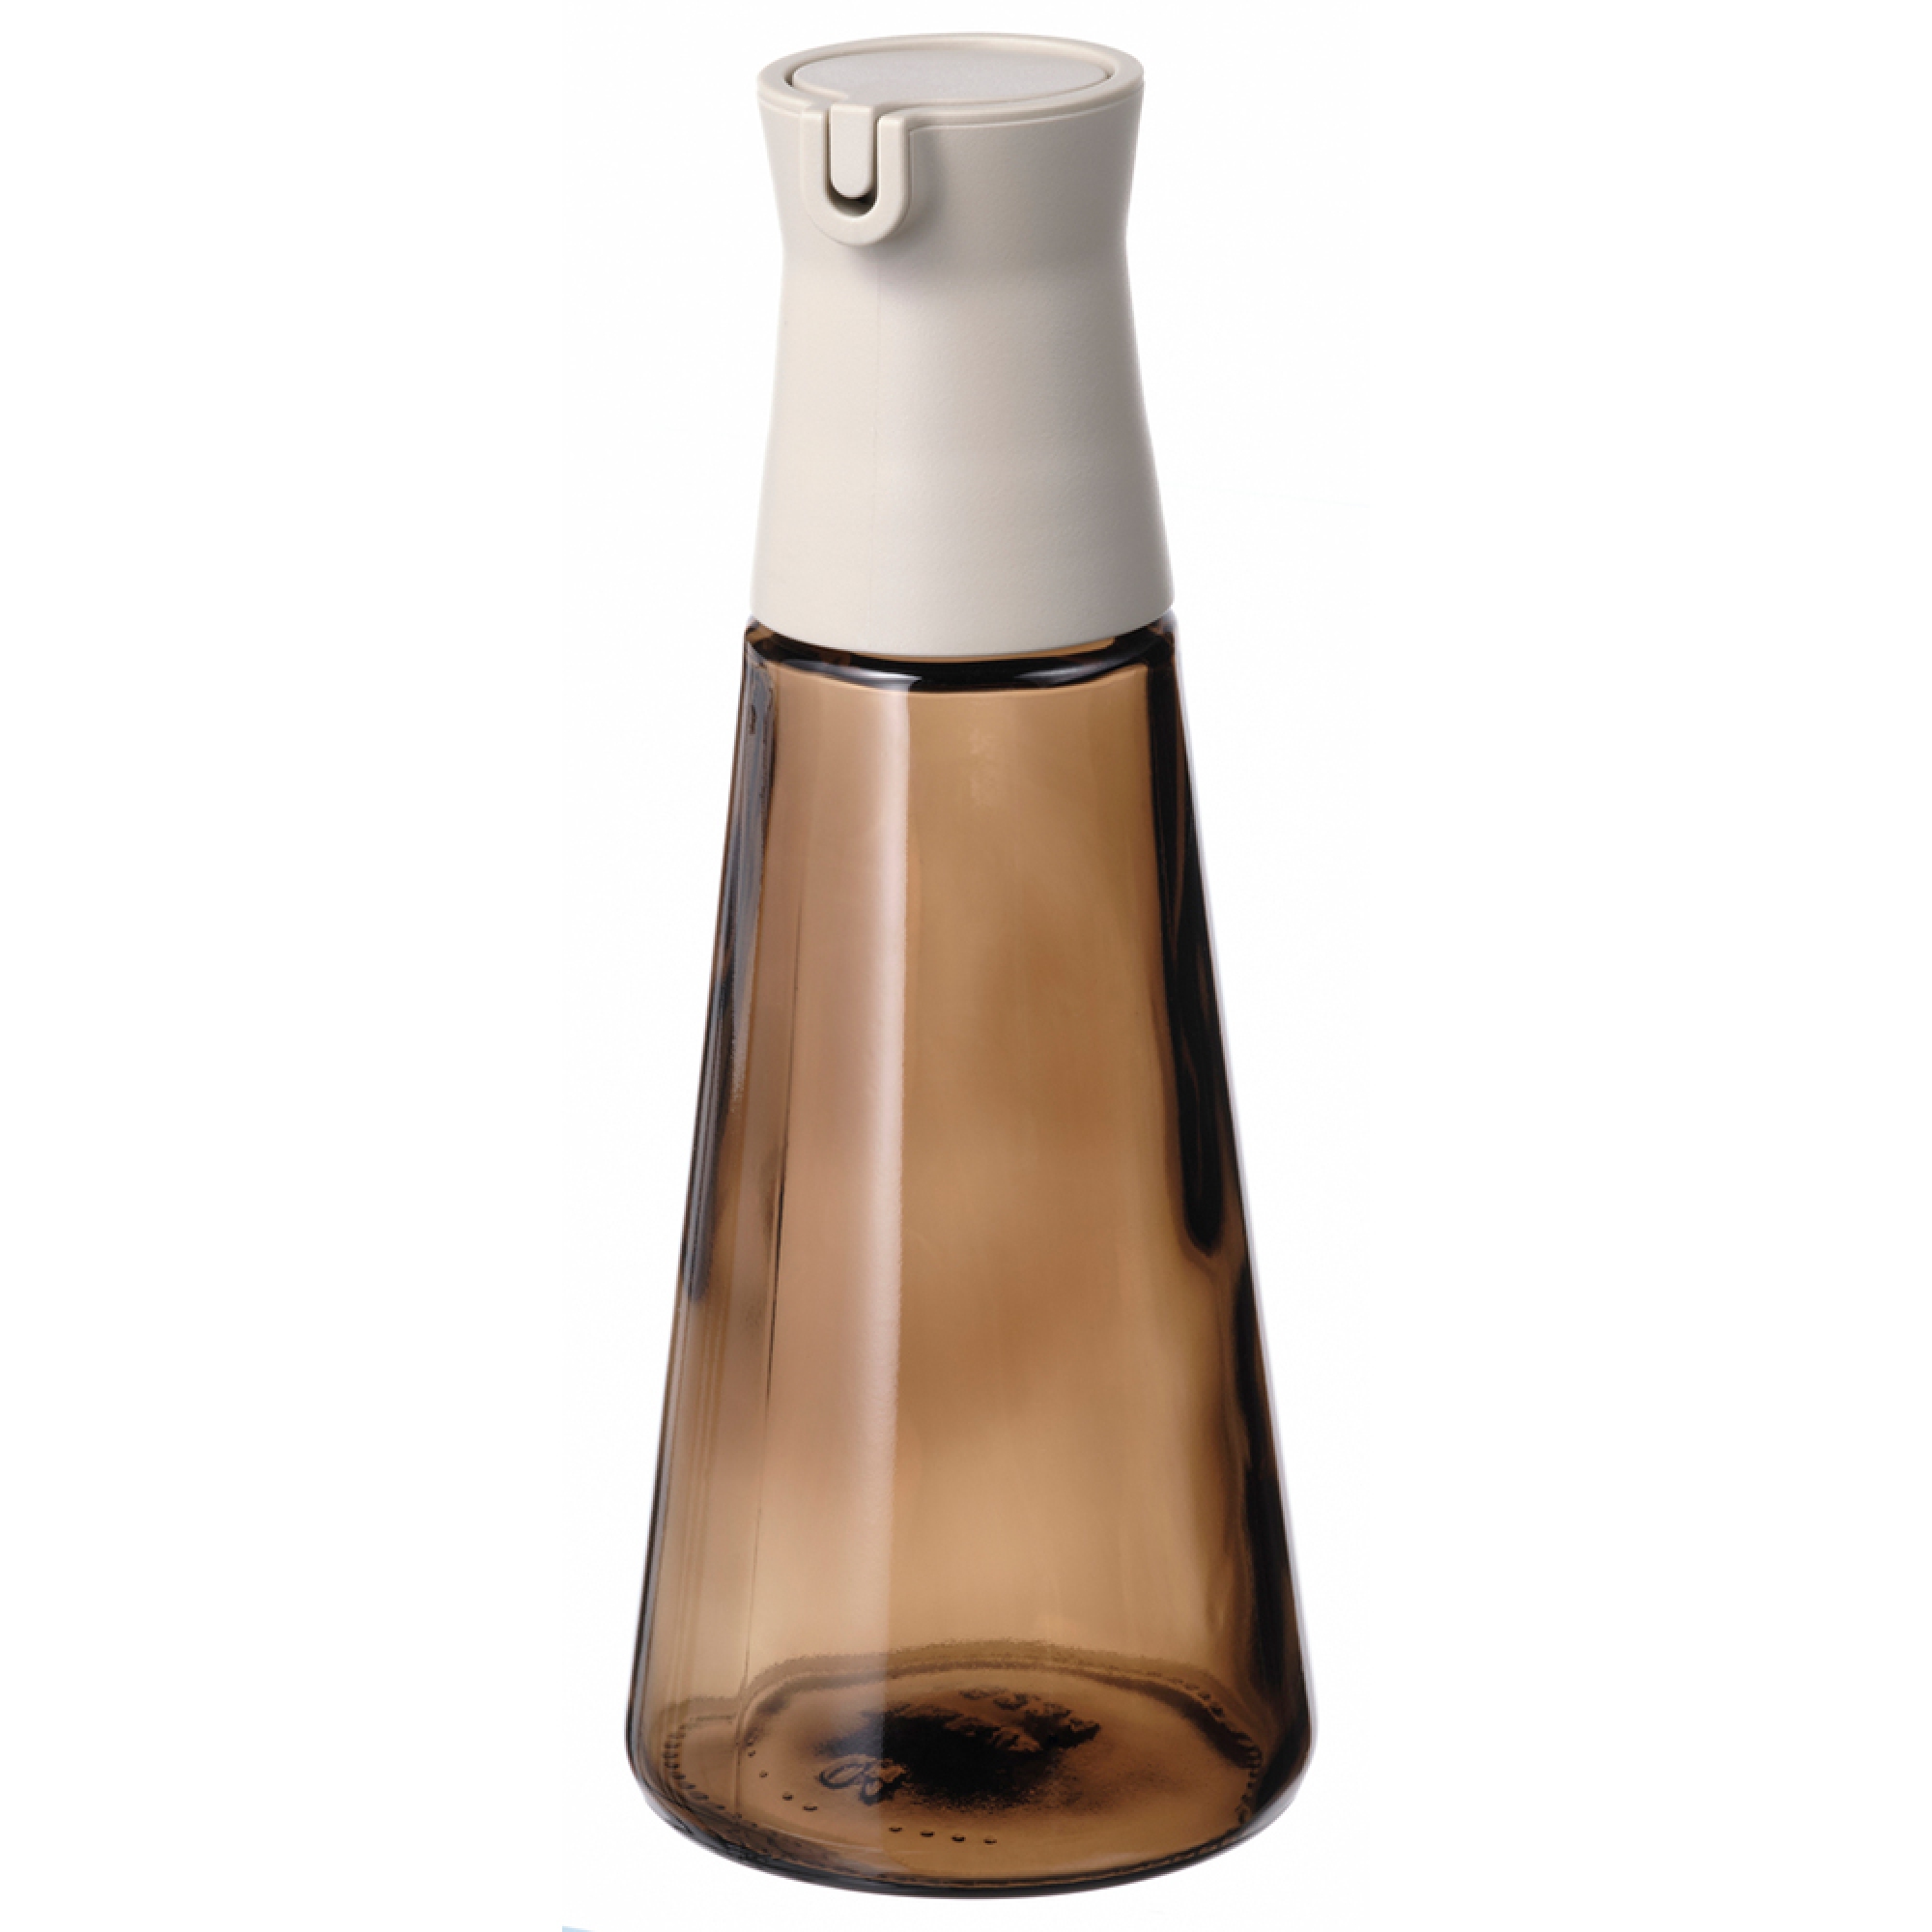 HALVTOM bottle with pour spout